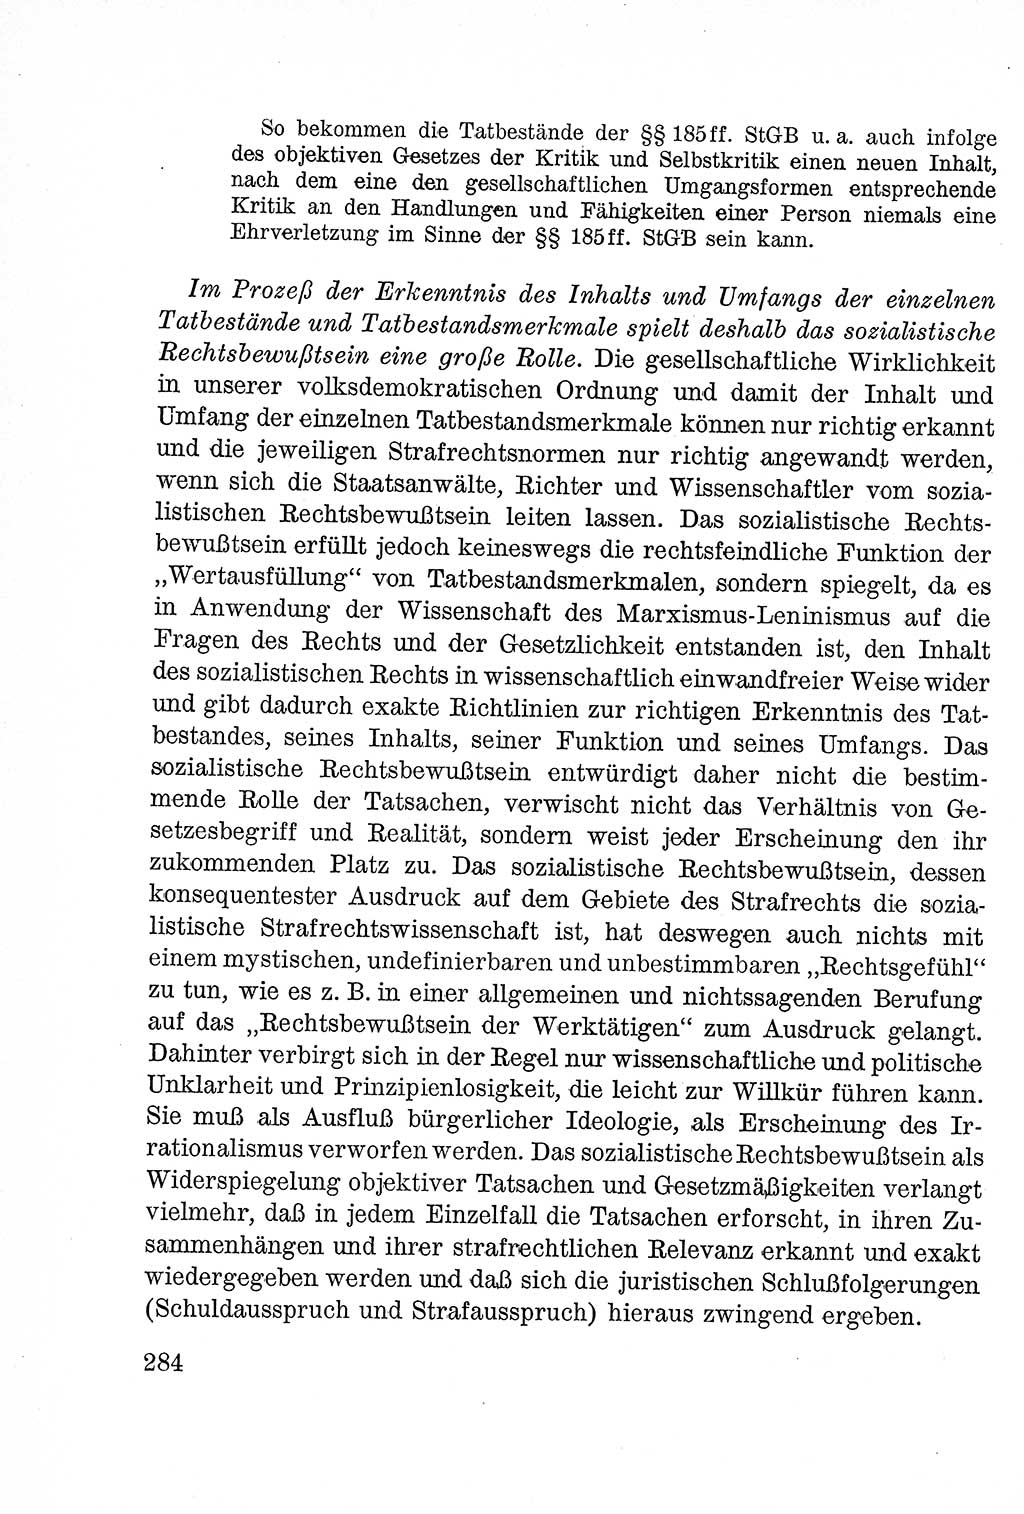 Lehrbuch des Strafrechts der Deutschen Demokratischen Republik (DDR), Allgemeiner Teil 1957, Seite 284 (Lb. Strafr. DDR AT 1957, S. 284)